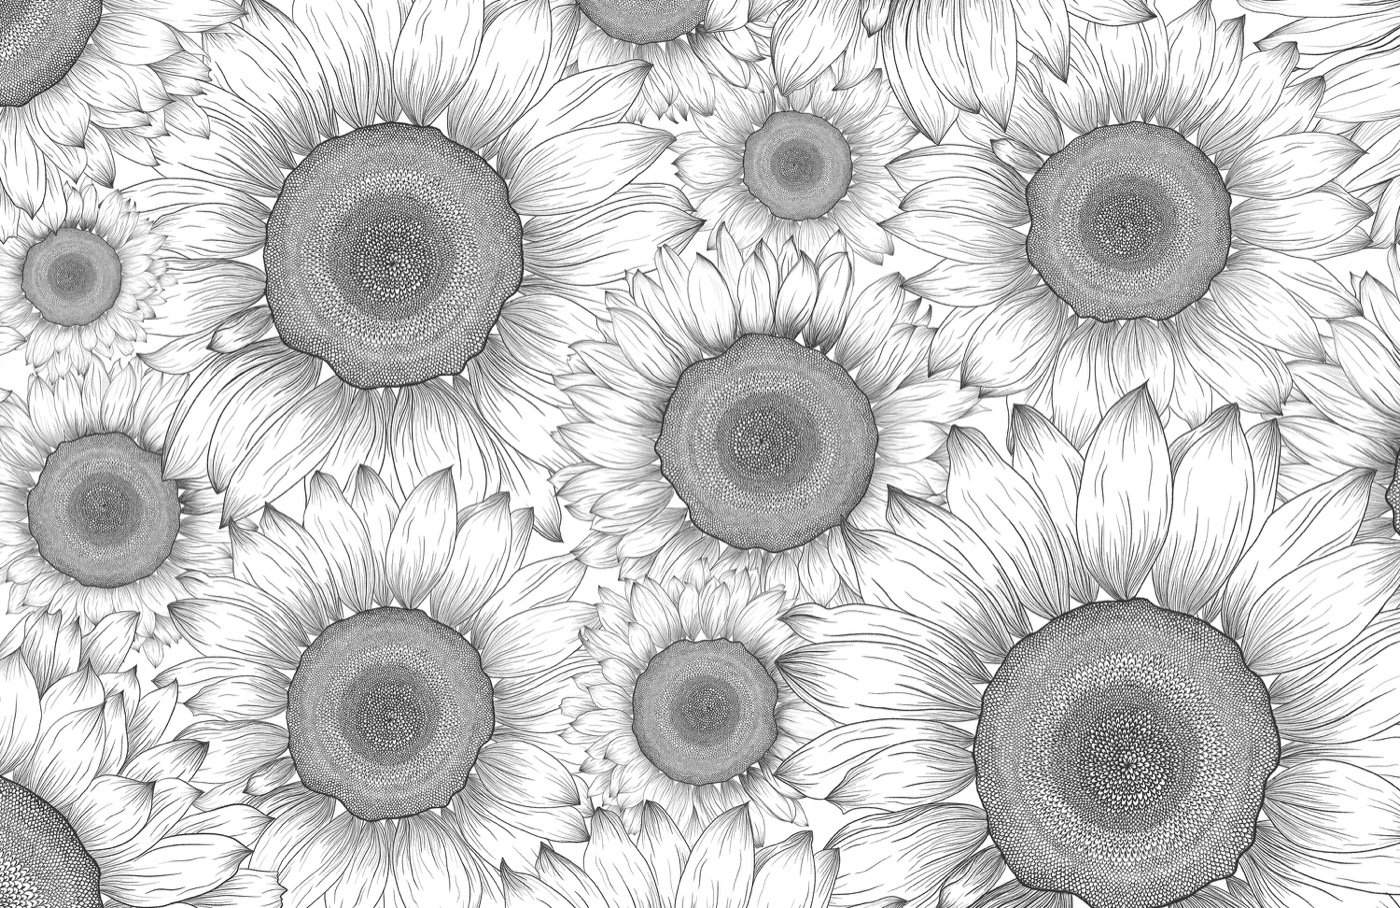 Black & White Sunflower Wallpaper Mural